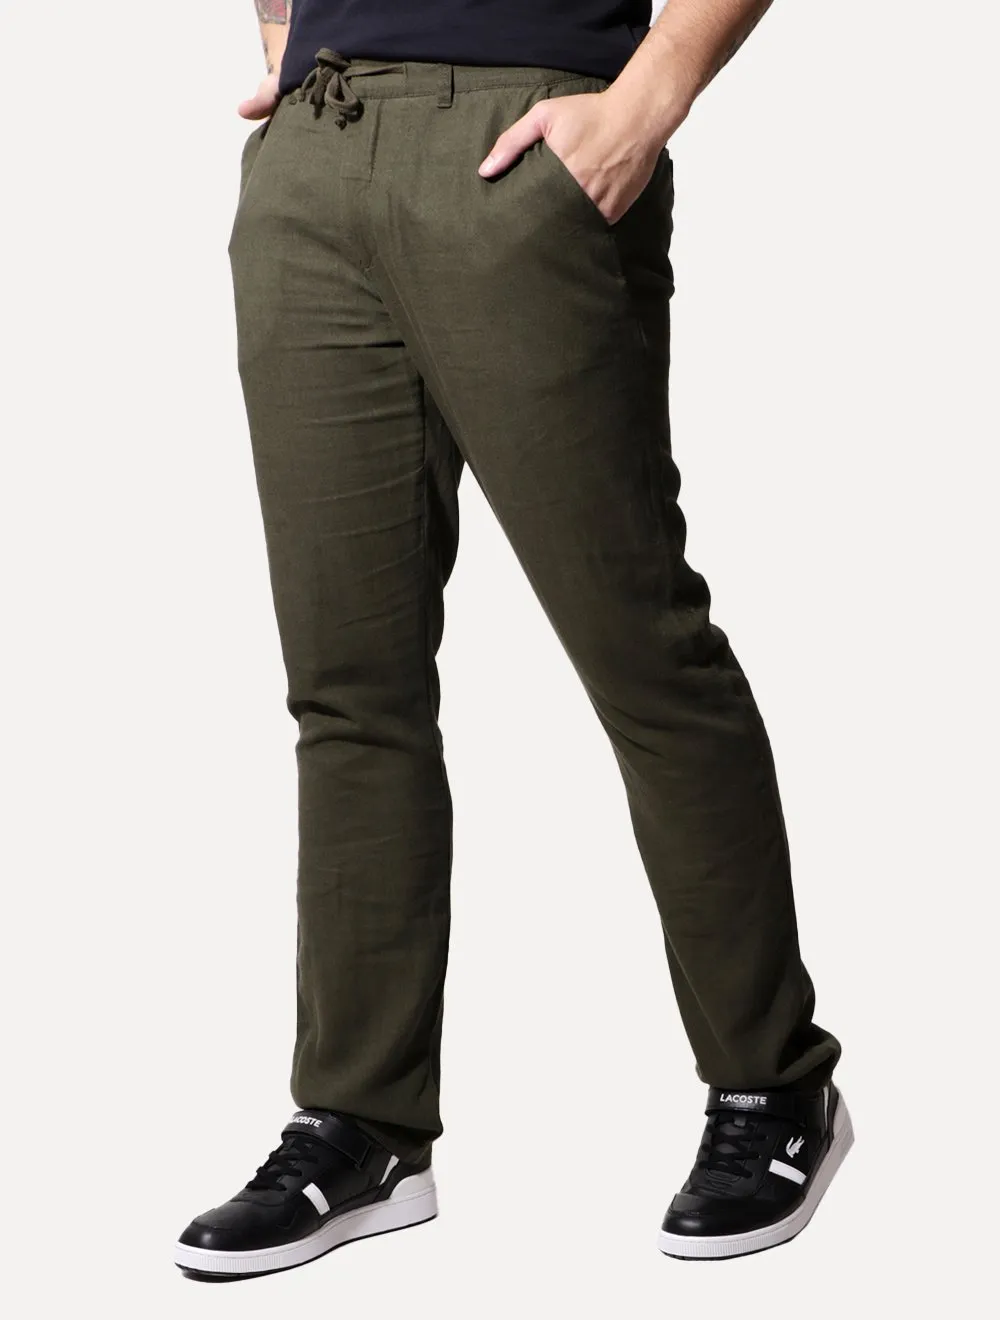 Calça Calvin Klein Jeans Masculina Linho Cós Elástico Verde Militar